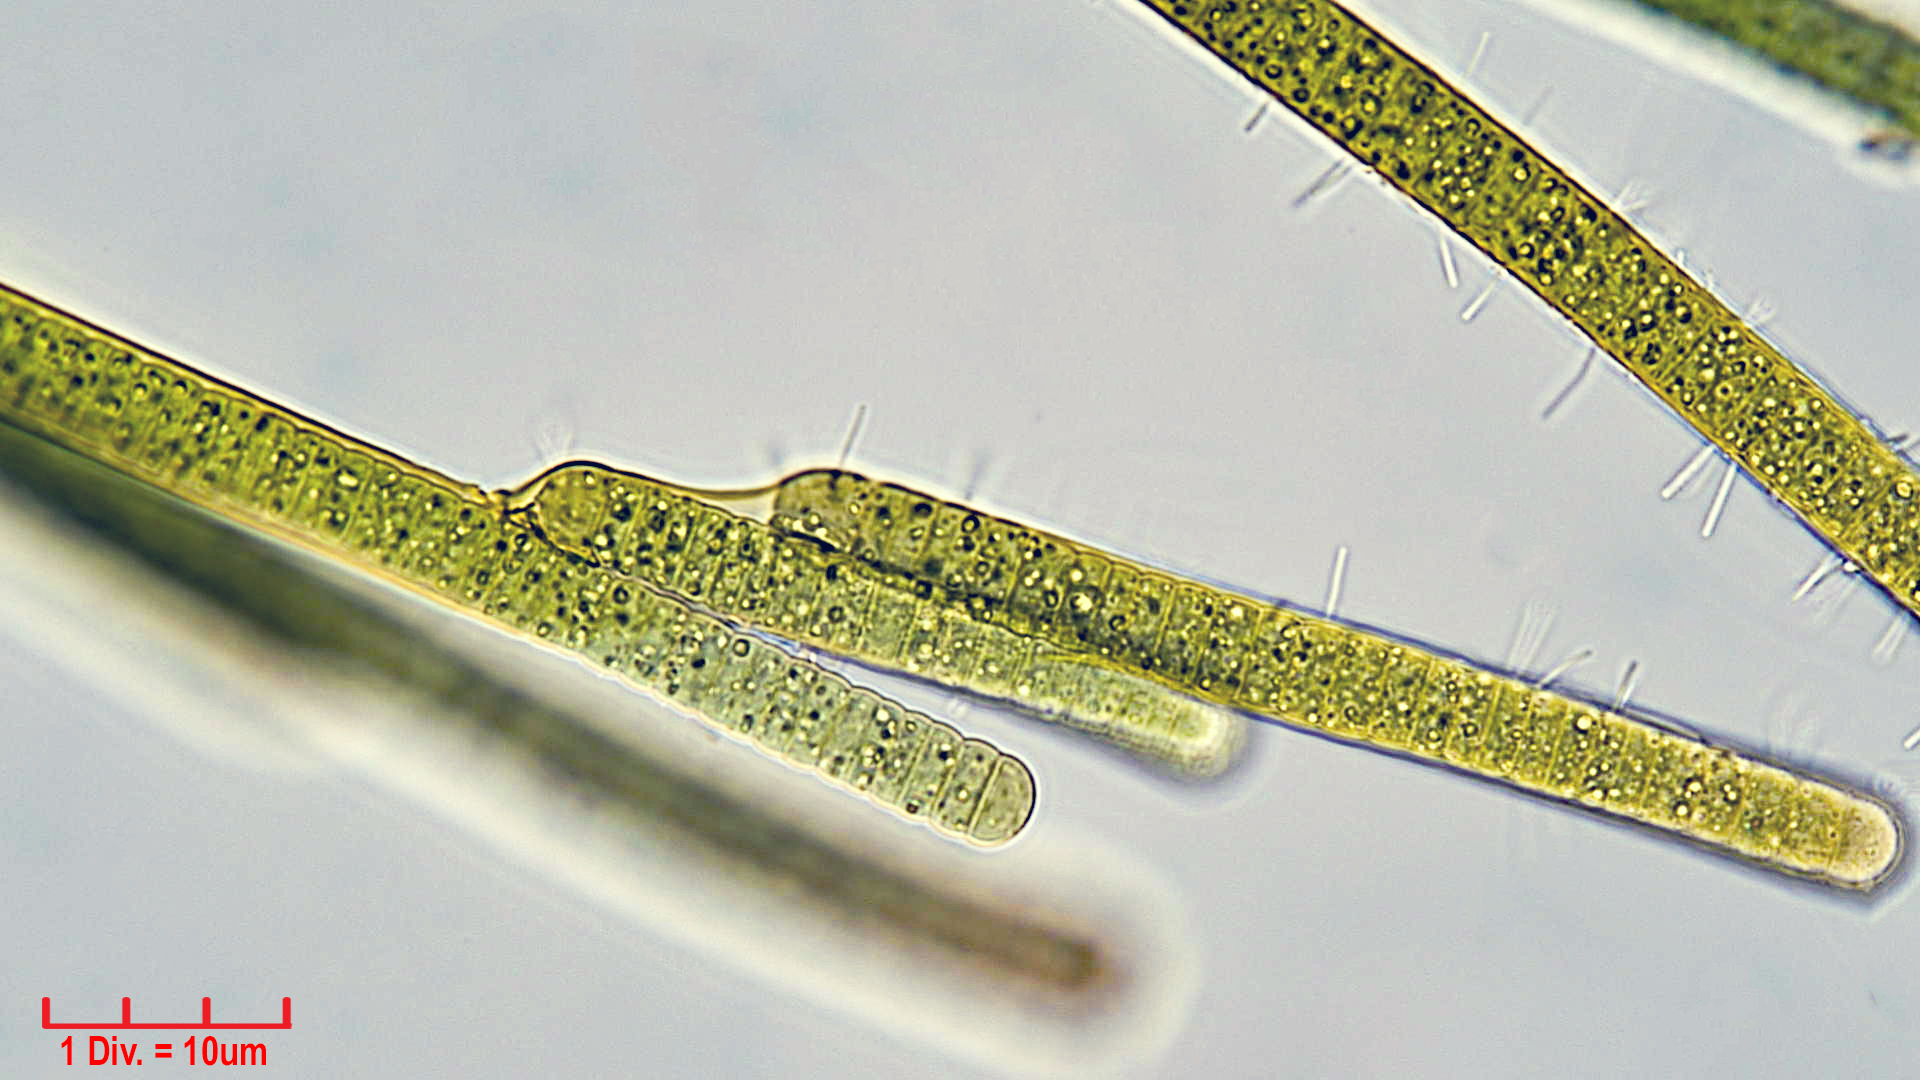 ././Cyanobacteria/Nostocales/Tolypothrichaceae/Tolypothrix/pencillata/tolypothrix-pencillata-5.jpg